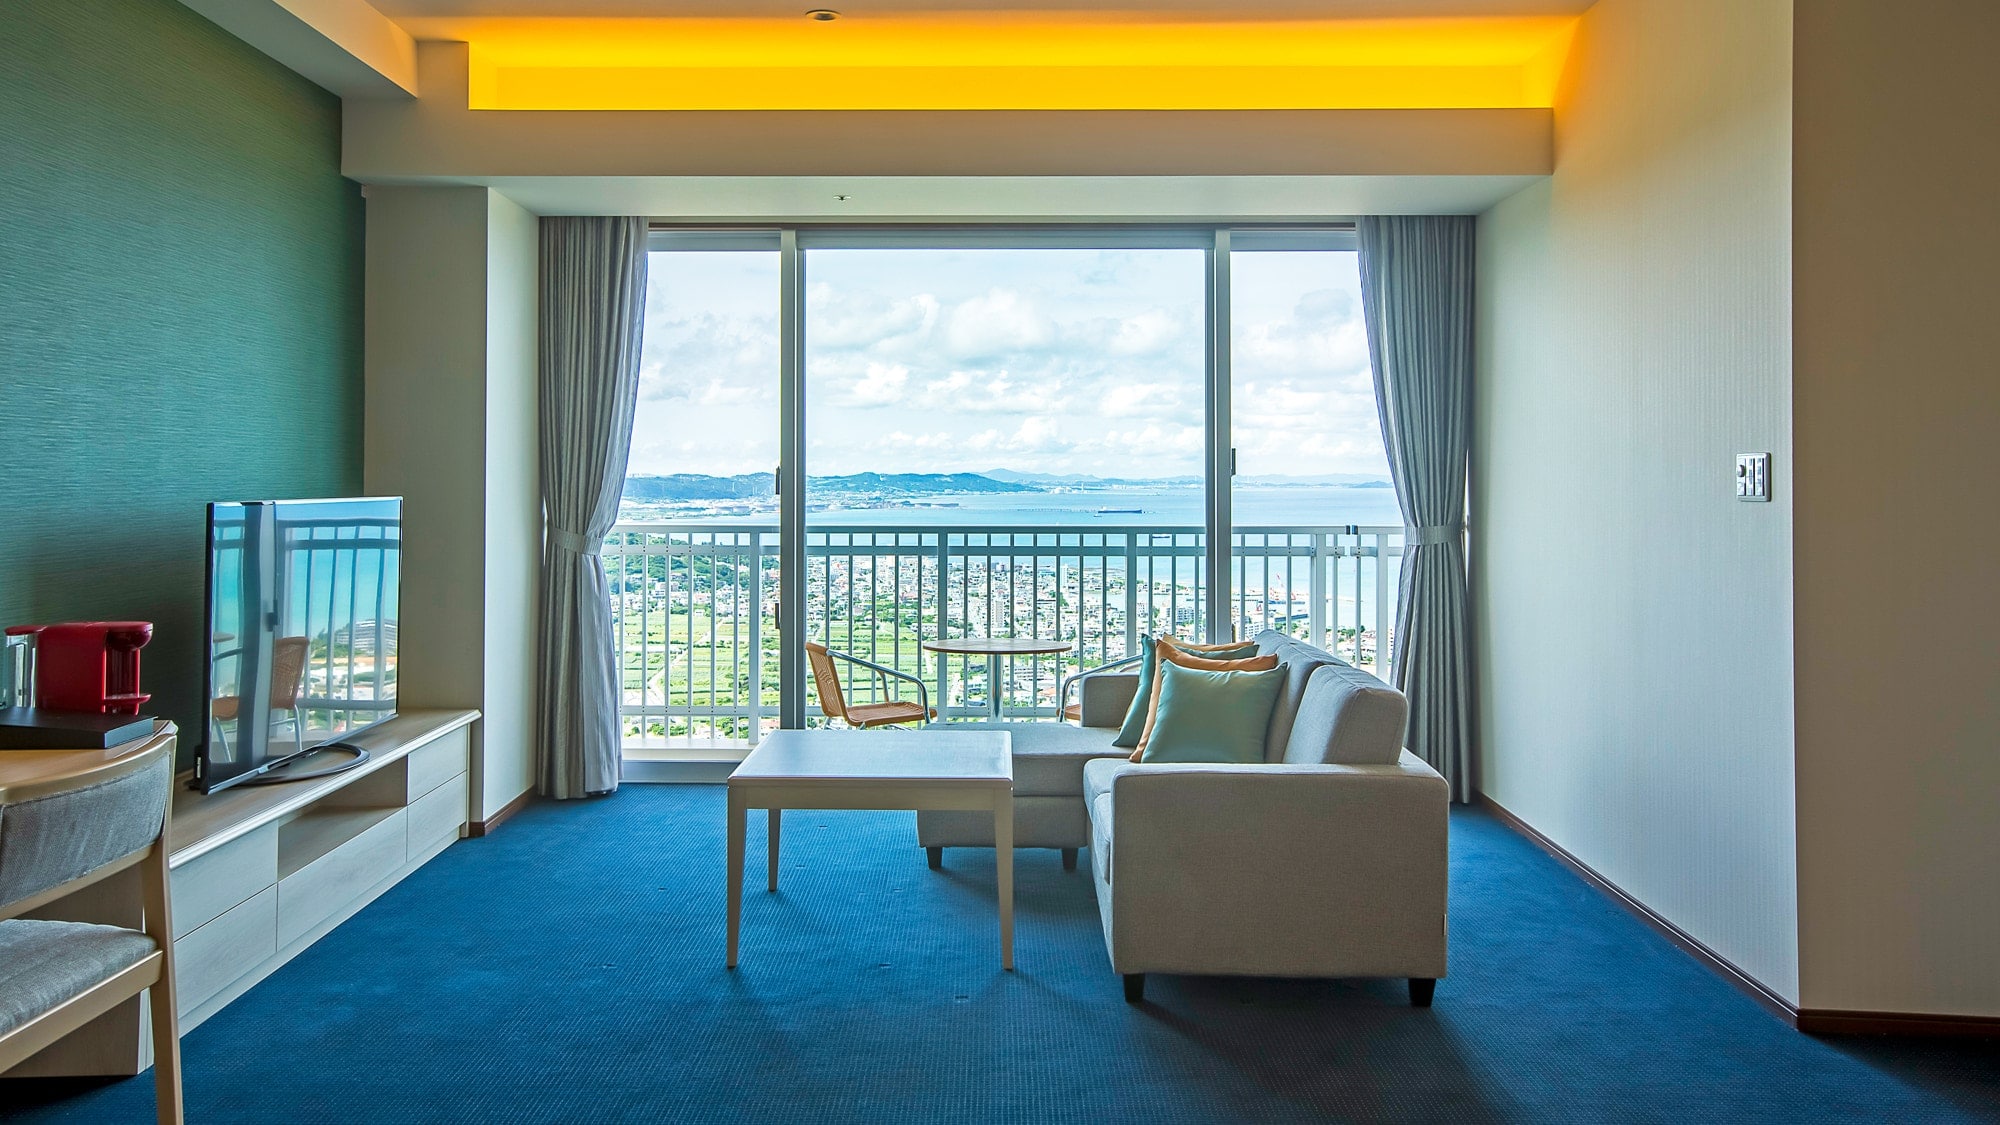 [Gedung tambahan] Suite / Kamar tamu di lantai atas tempat Anda dapat merasakan langit Okinawa di dekatnya